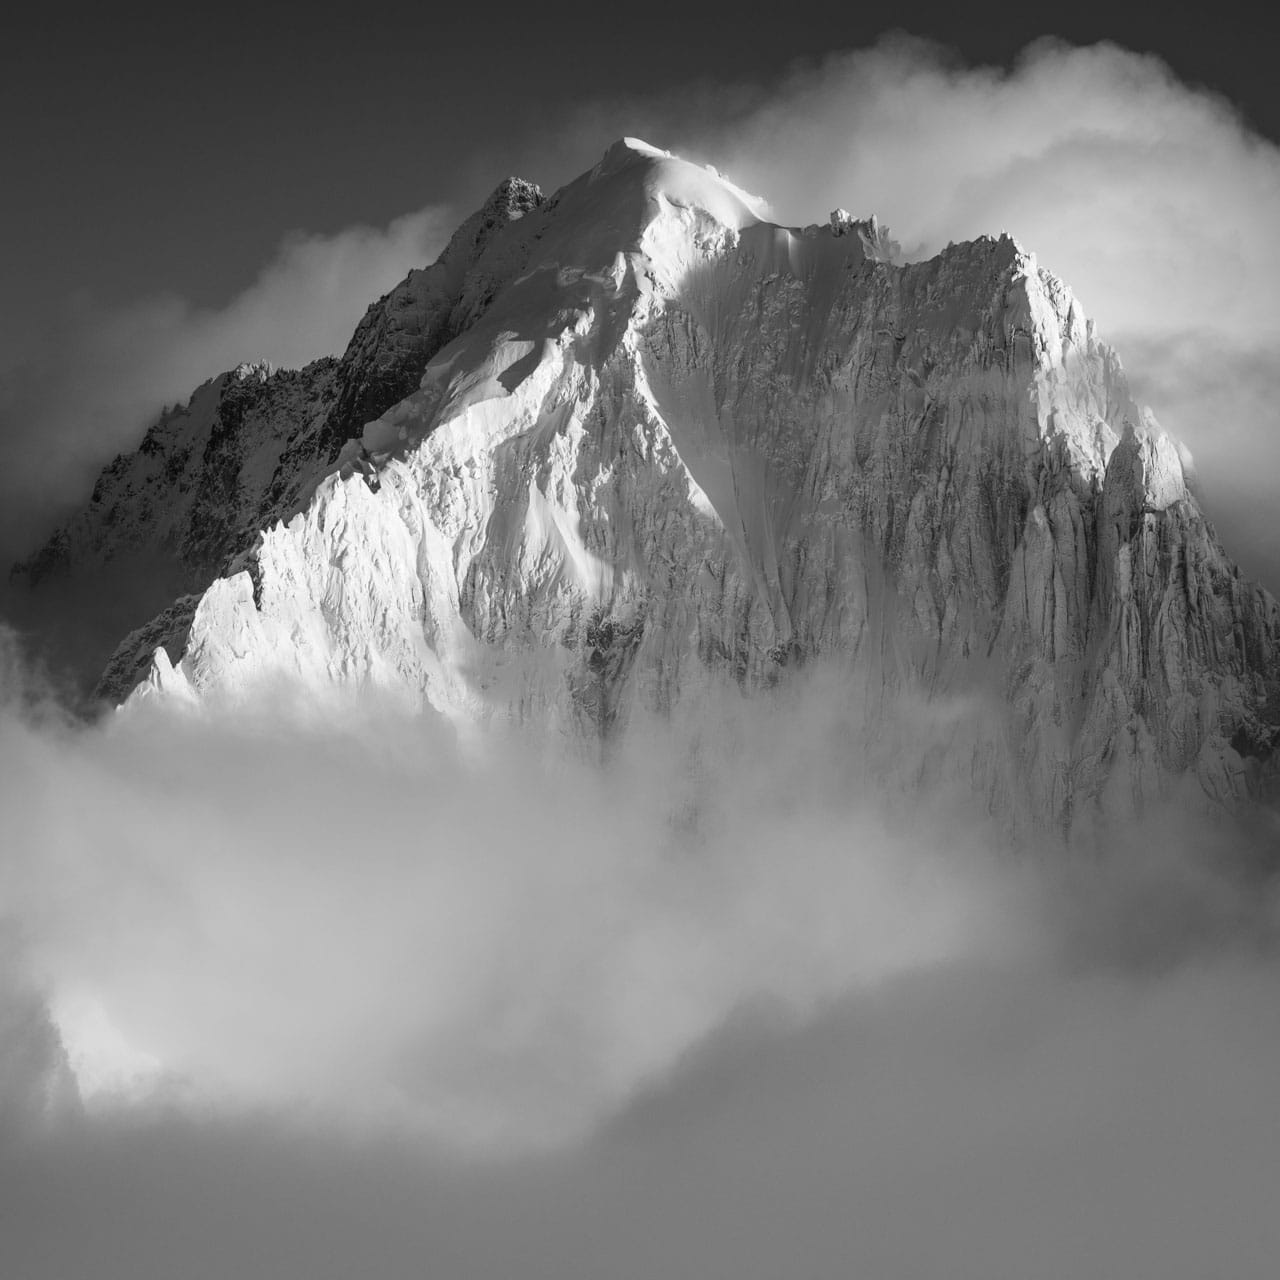 Photo noir et blanc de l'Aiguille Verte et des sommets des Alpes Chamonix dans les nuages et le brouillard après une tempête ed neige